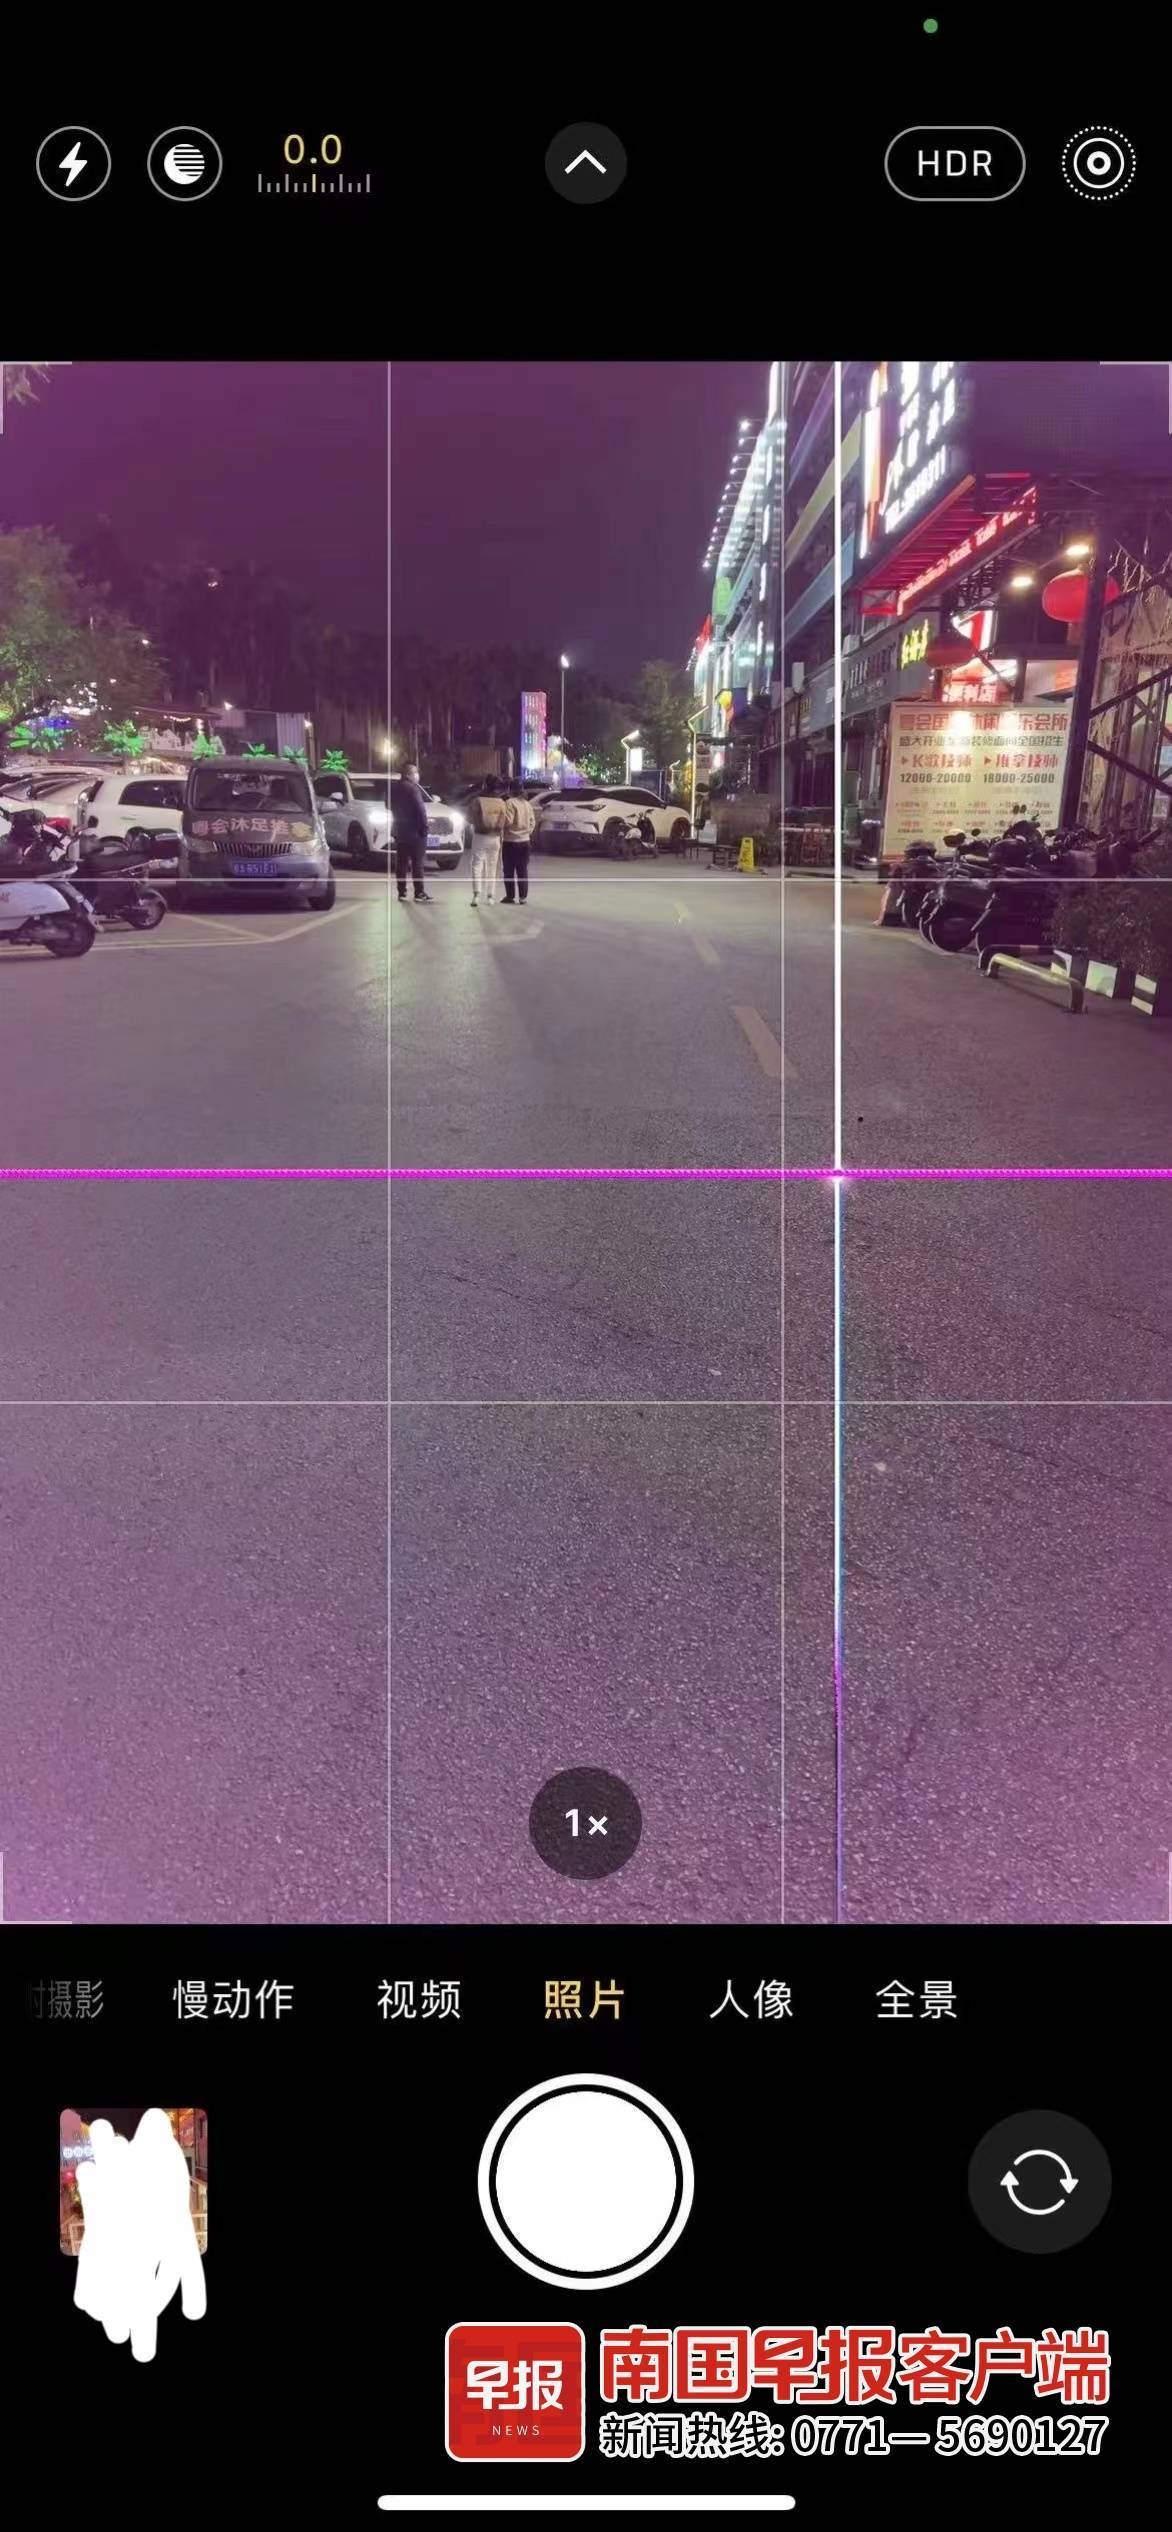 华为手机陌陌蓝灯提示
:有市民拍摄后手机摄像头受损！激光灯秀是营造氛围还是制造“麻烦”？